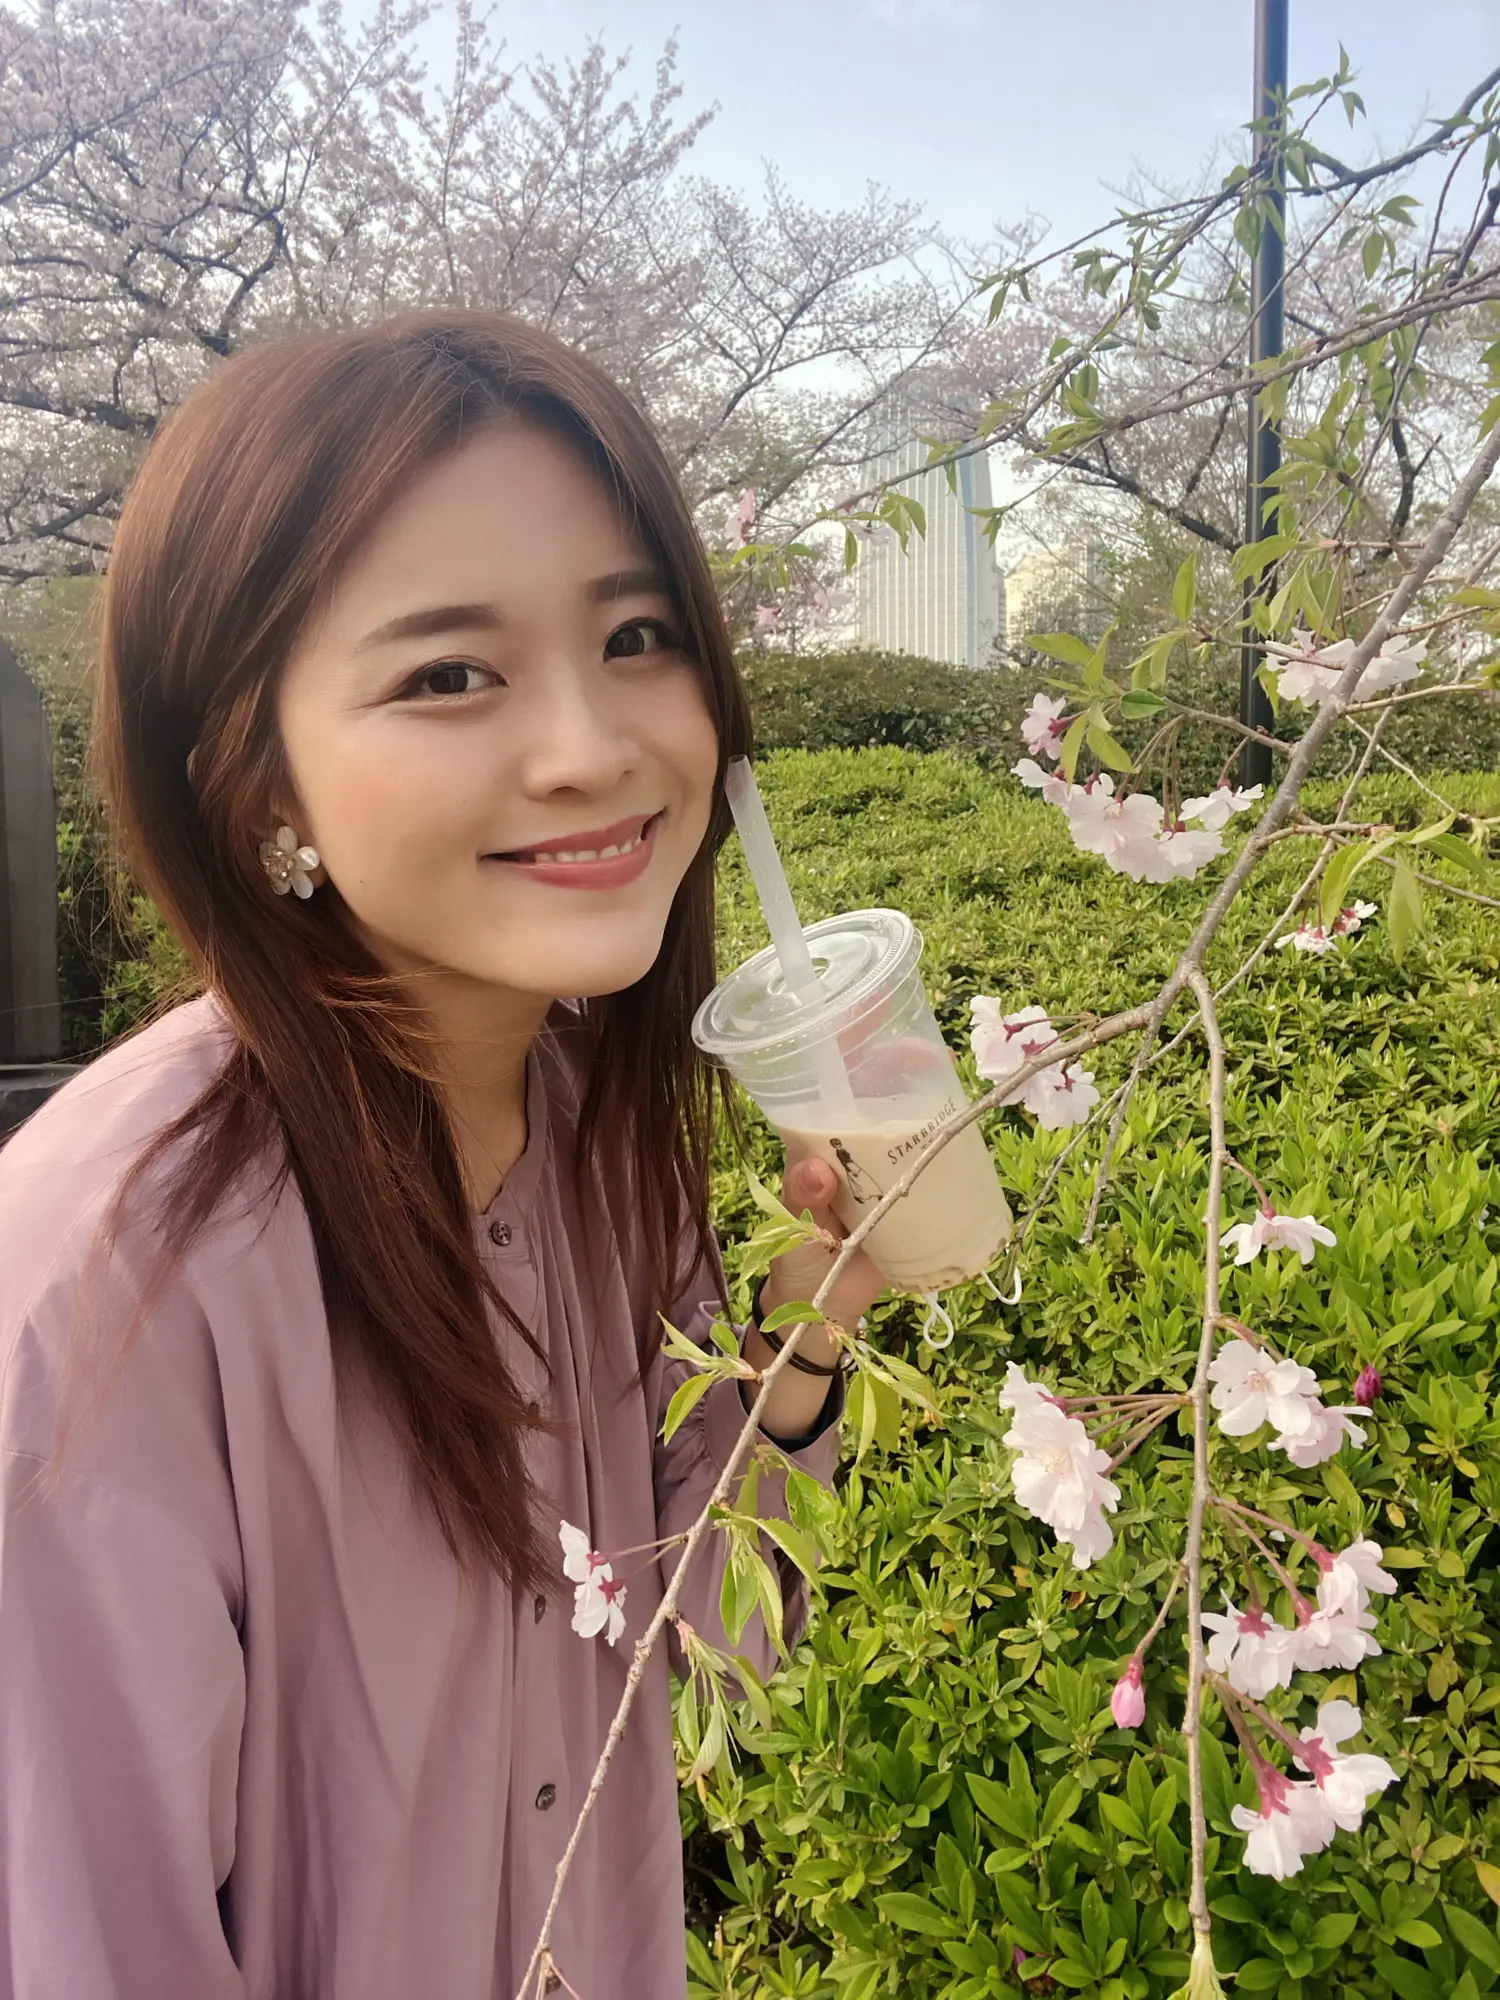 桜に合わせたい、ピンクと花のイヤリング。 | 東紗友美が投稿したフォトブック | Lemon8